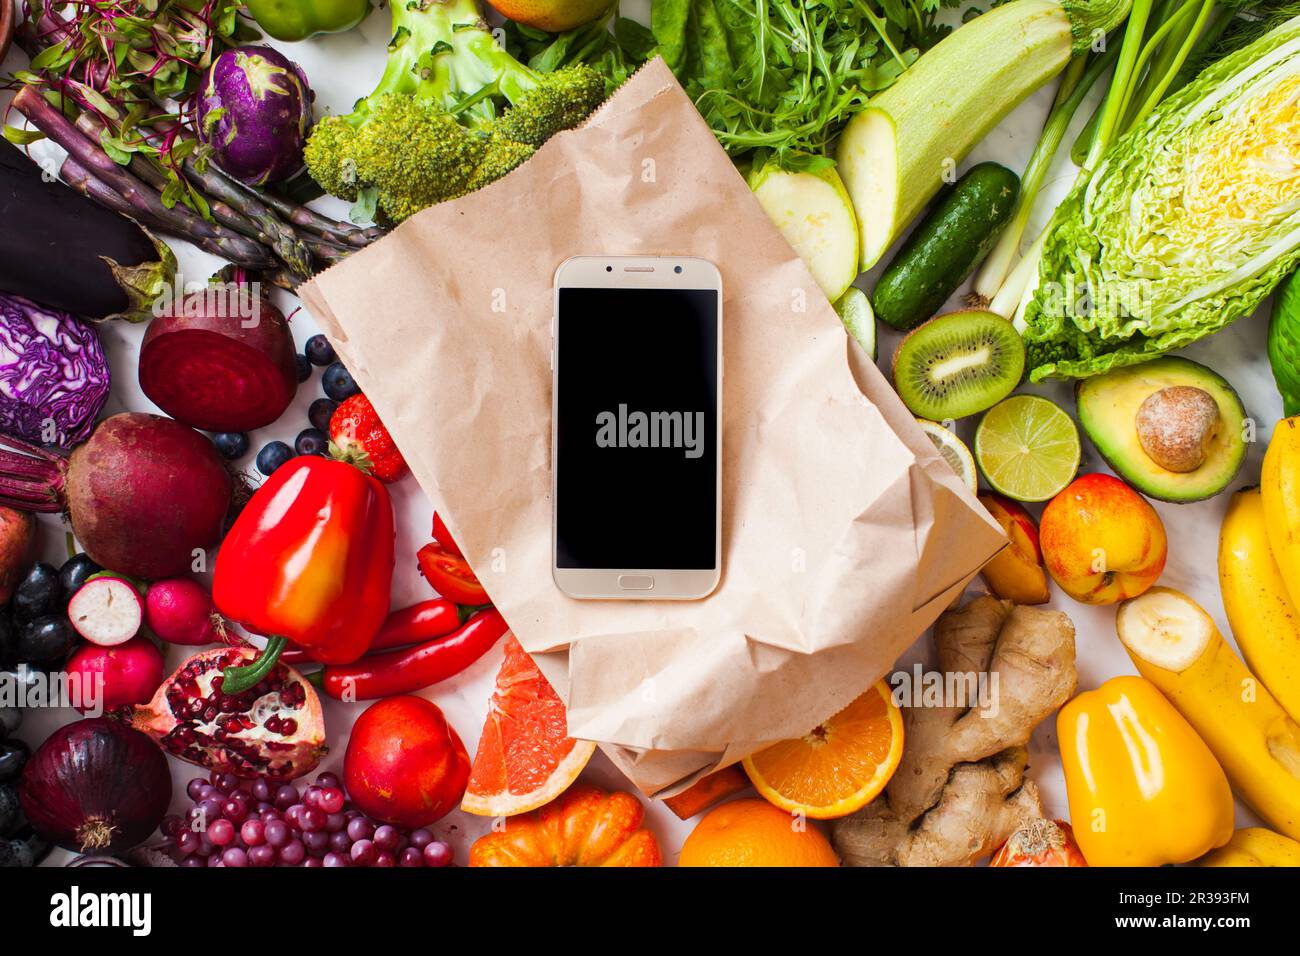 Des fruits et légumes de couleur arc-en-ciel sur la table et le smartphone Banque D'Images